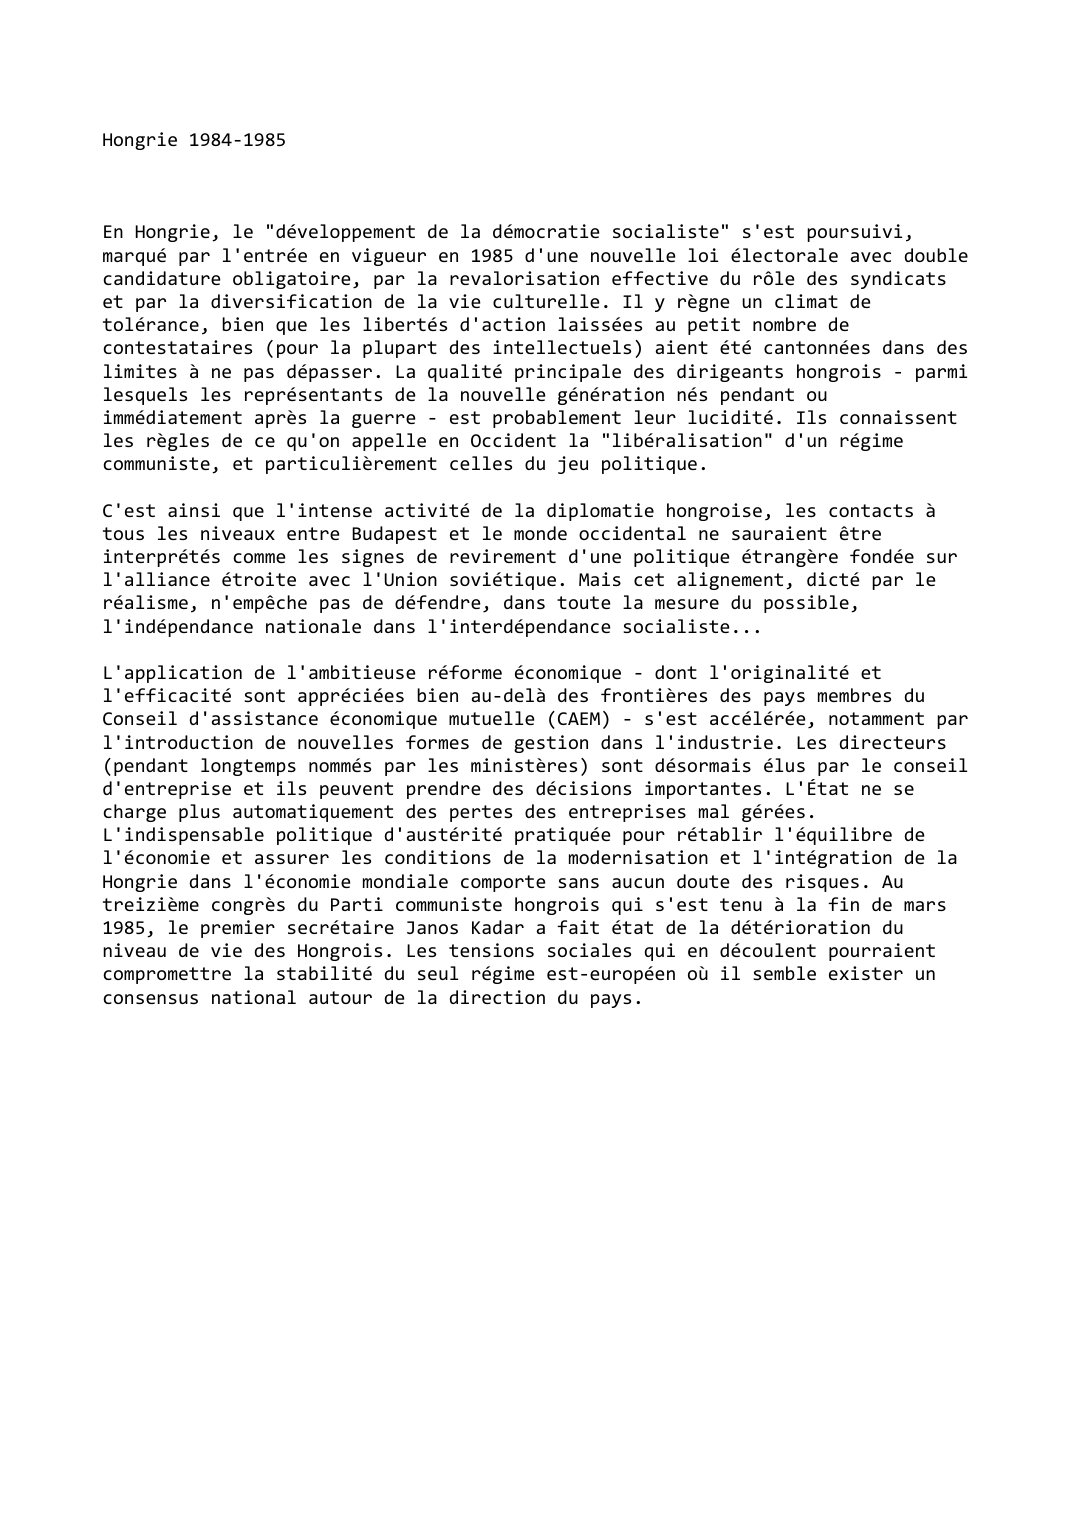 Prévisualisation du document Hongrie (1984-1985)